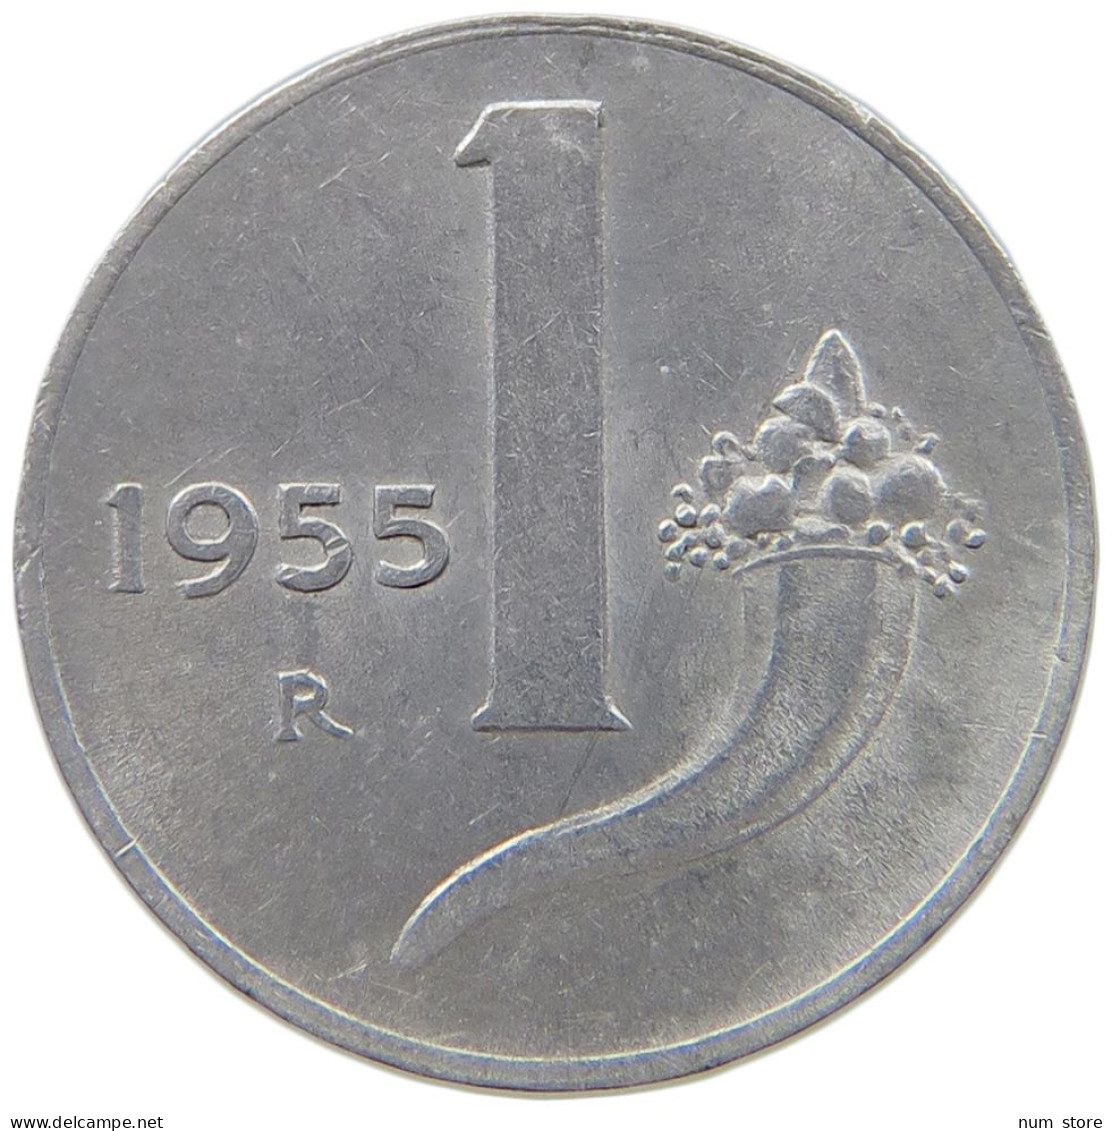 ITALY 1 LIRA 1955 #a070 0753 - 1 Lire